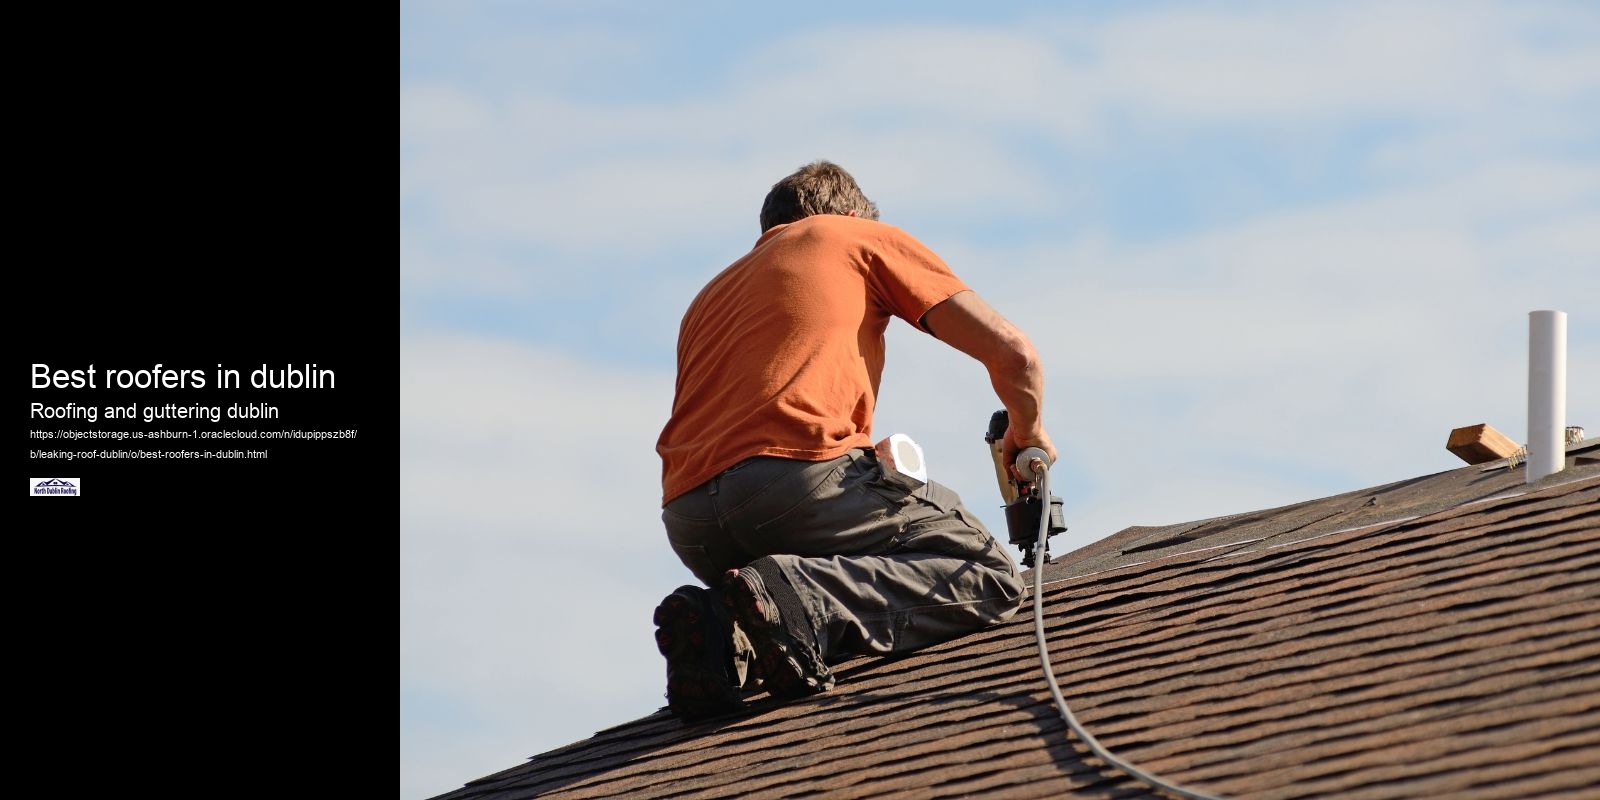 Best roofers in dublin